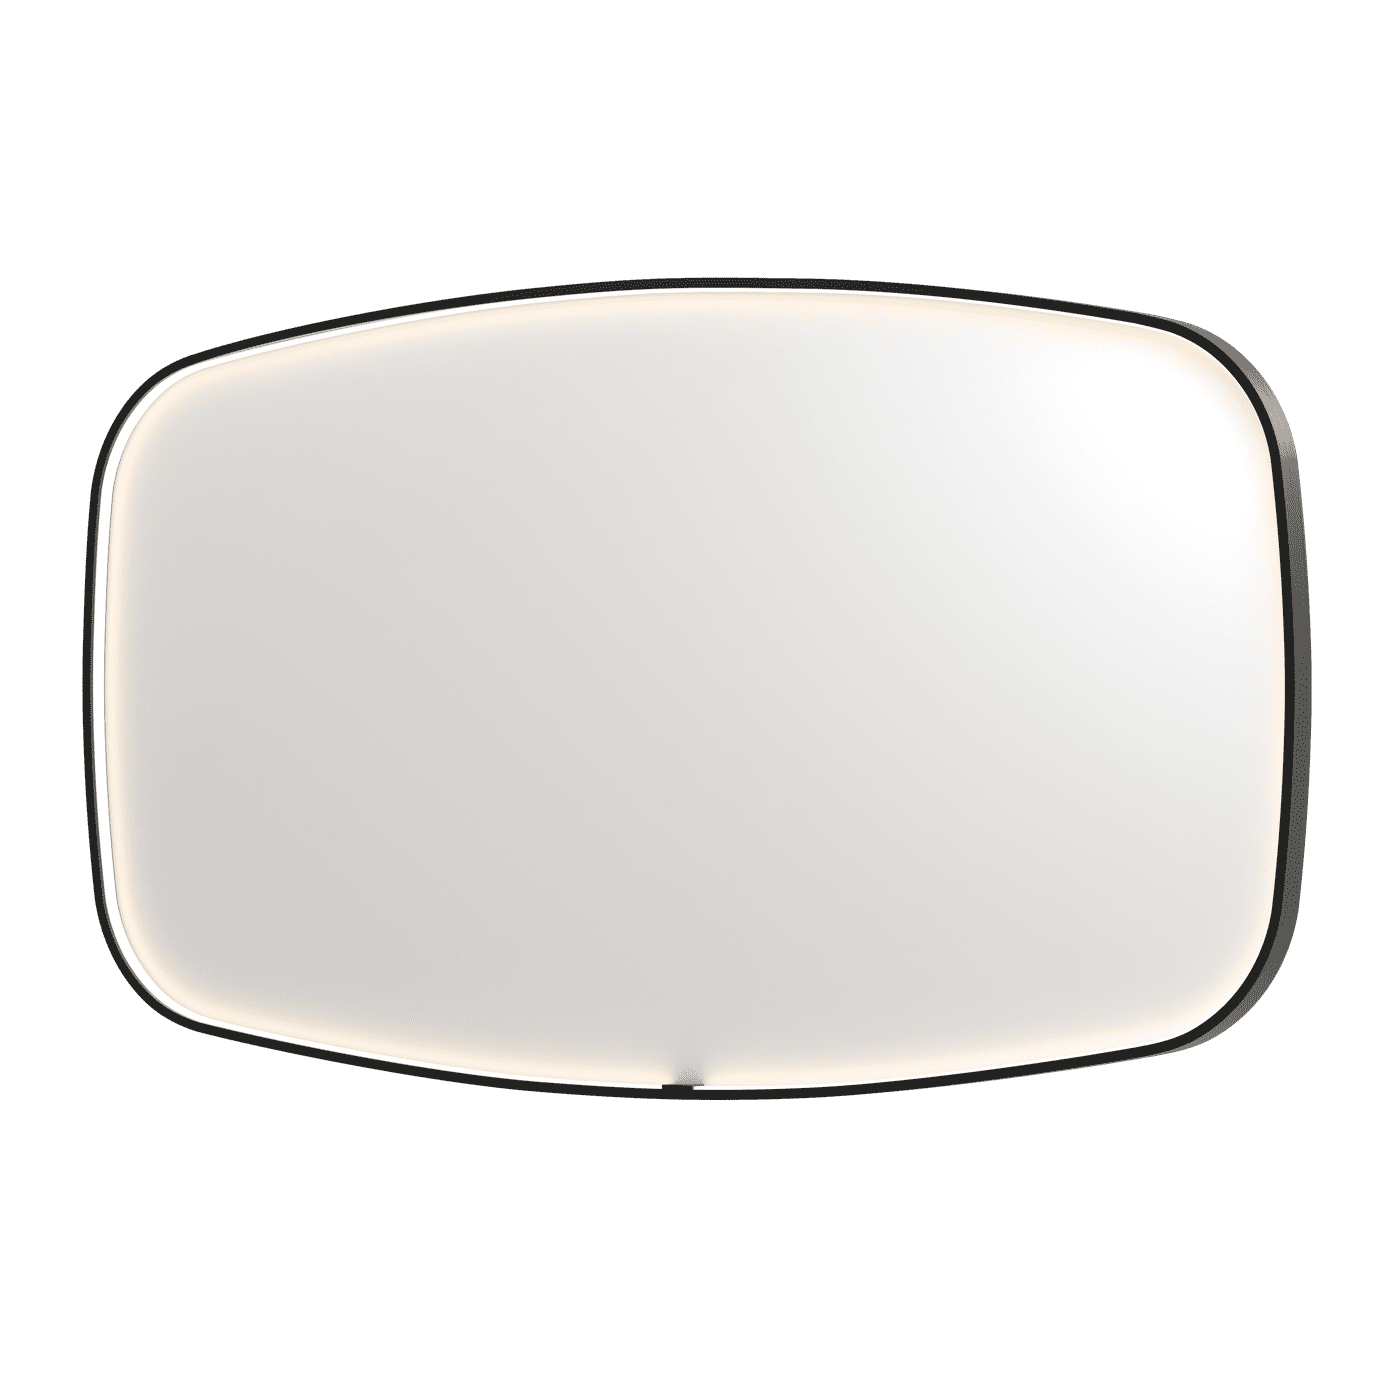 Billede af SP31 superellipse spejl med direkte LED i matsort - 140x4x80